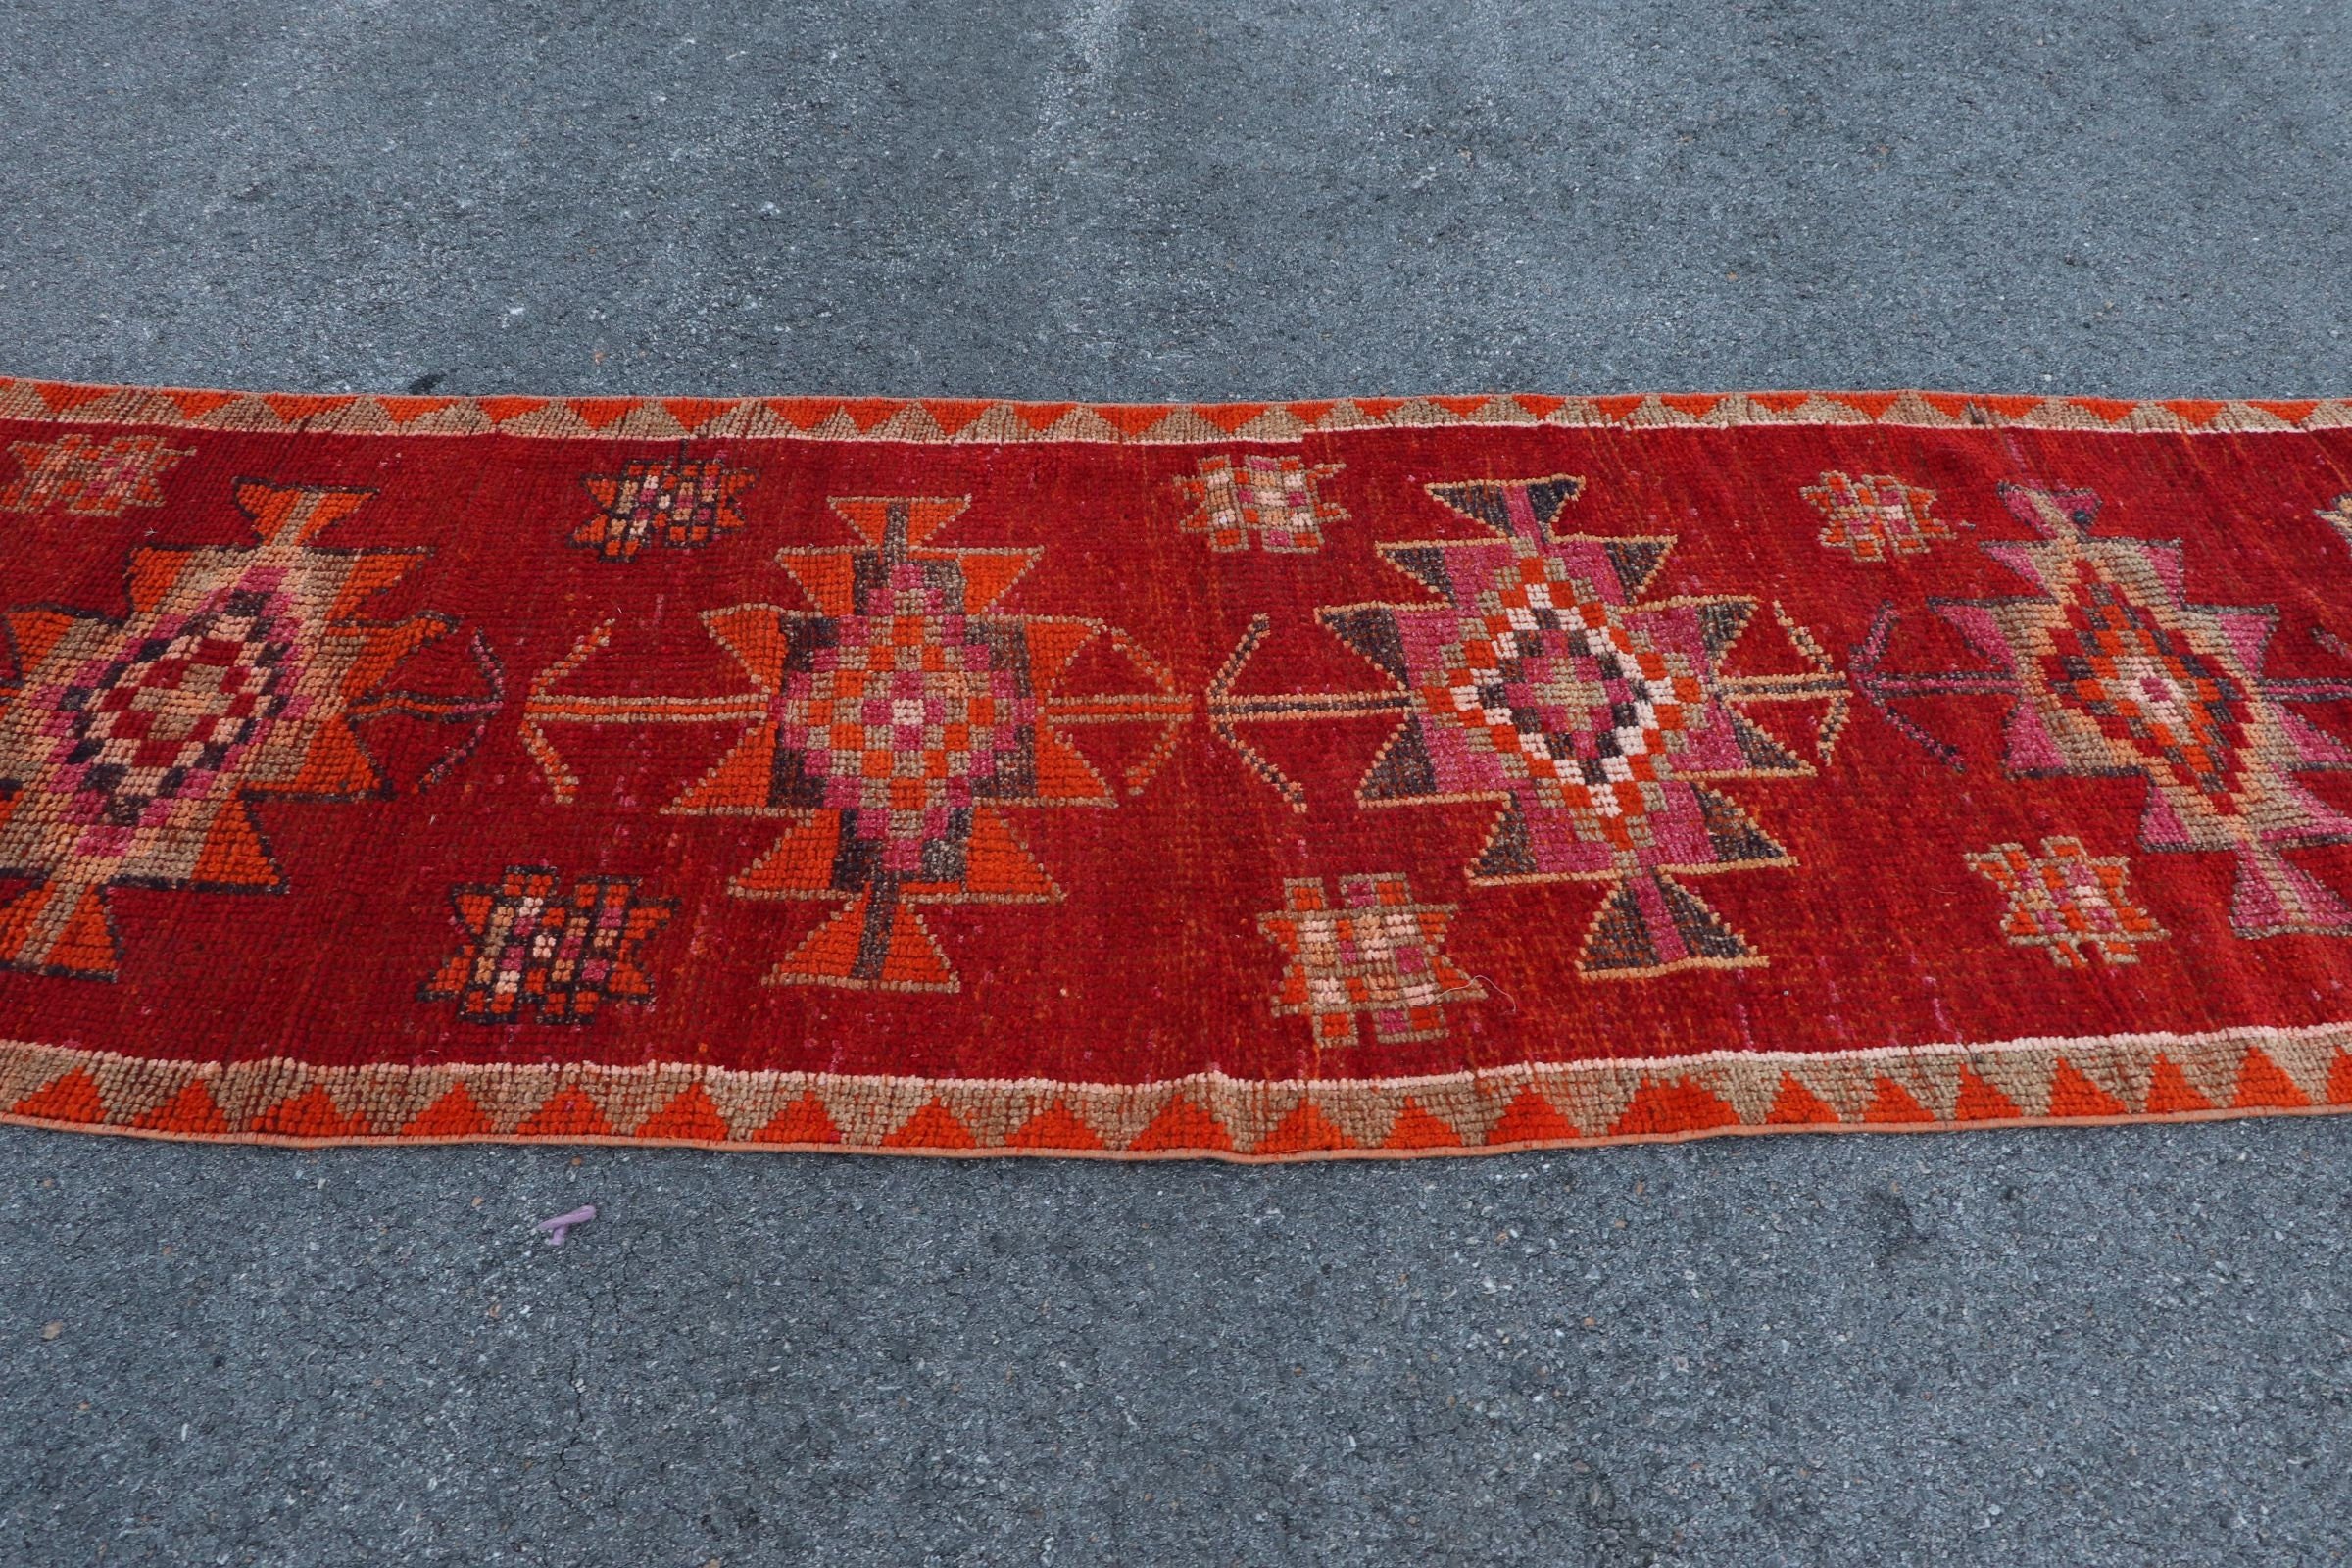 Red Oriental Rugs, Turkish Rug, Rugs for Runner, Anatolian Rug, 3x10.2 ft Runner Rug, Corridor Rug, Vintage Rug, Bright Rug, Floor Rugs